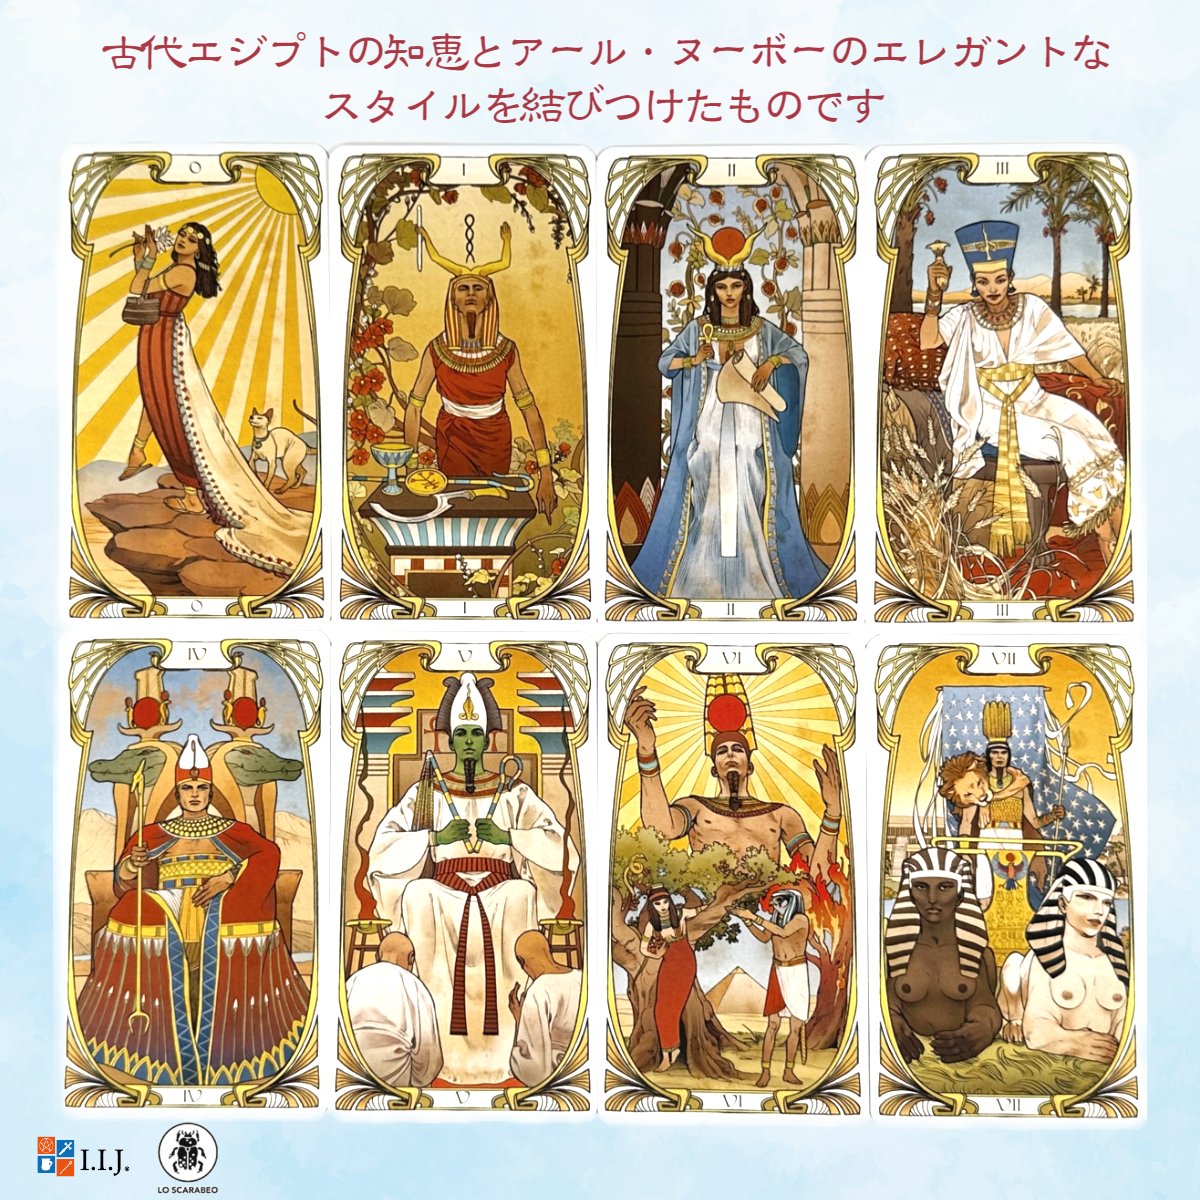 タロットカード 78枚 ウェイト版 タロット占い エジプシャン・アールヌーボー・タロット Egyptian Art Nouveau Tarot  日本語解説書付き 正規品